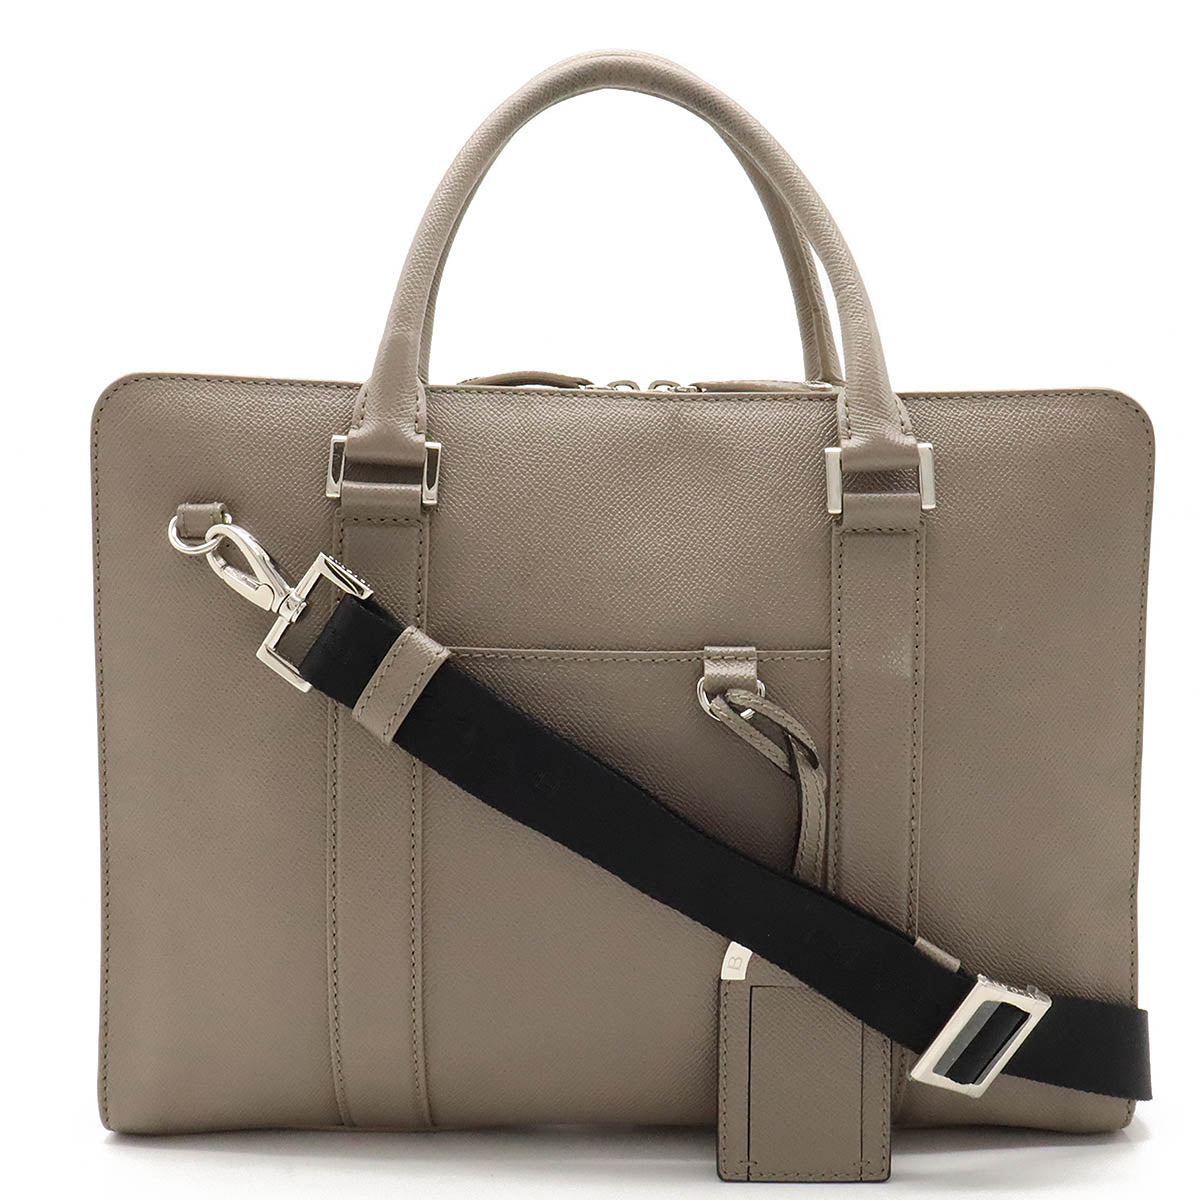 BVLGARI Bulgari Bulgarian Bulgarian Man Business Bag Briefcase 2WAY Shoulder Bag Leather Gr Silver Gold  37924 BLUMIN